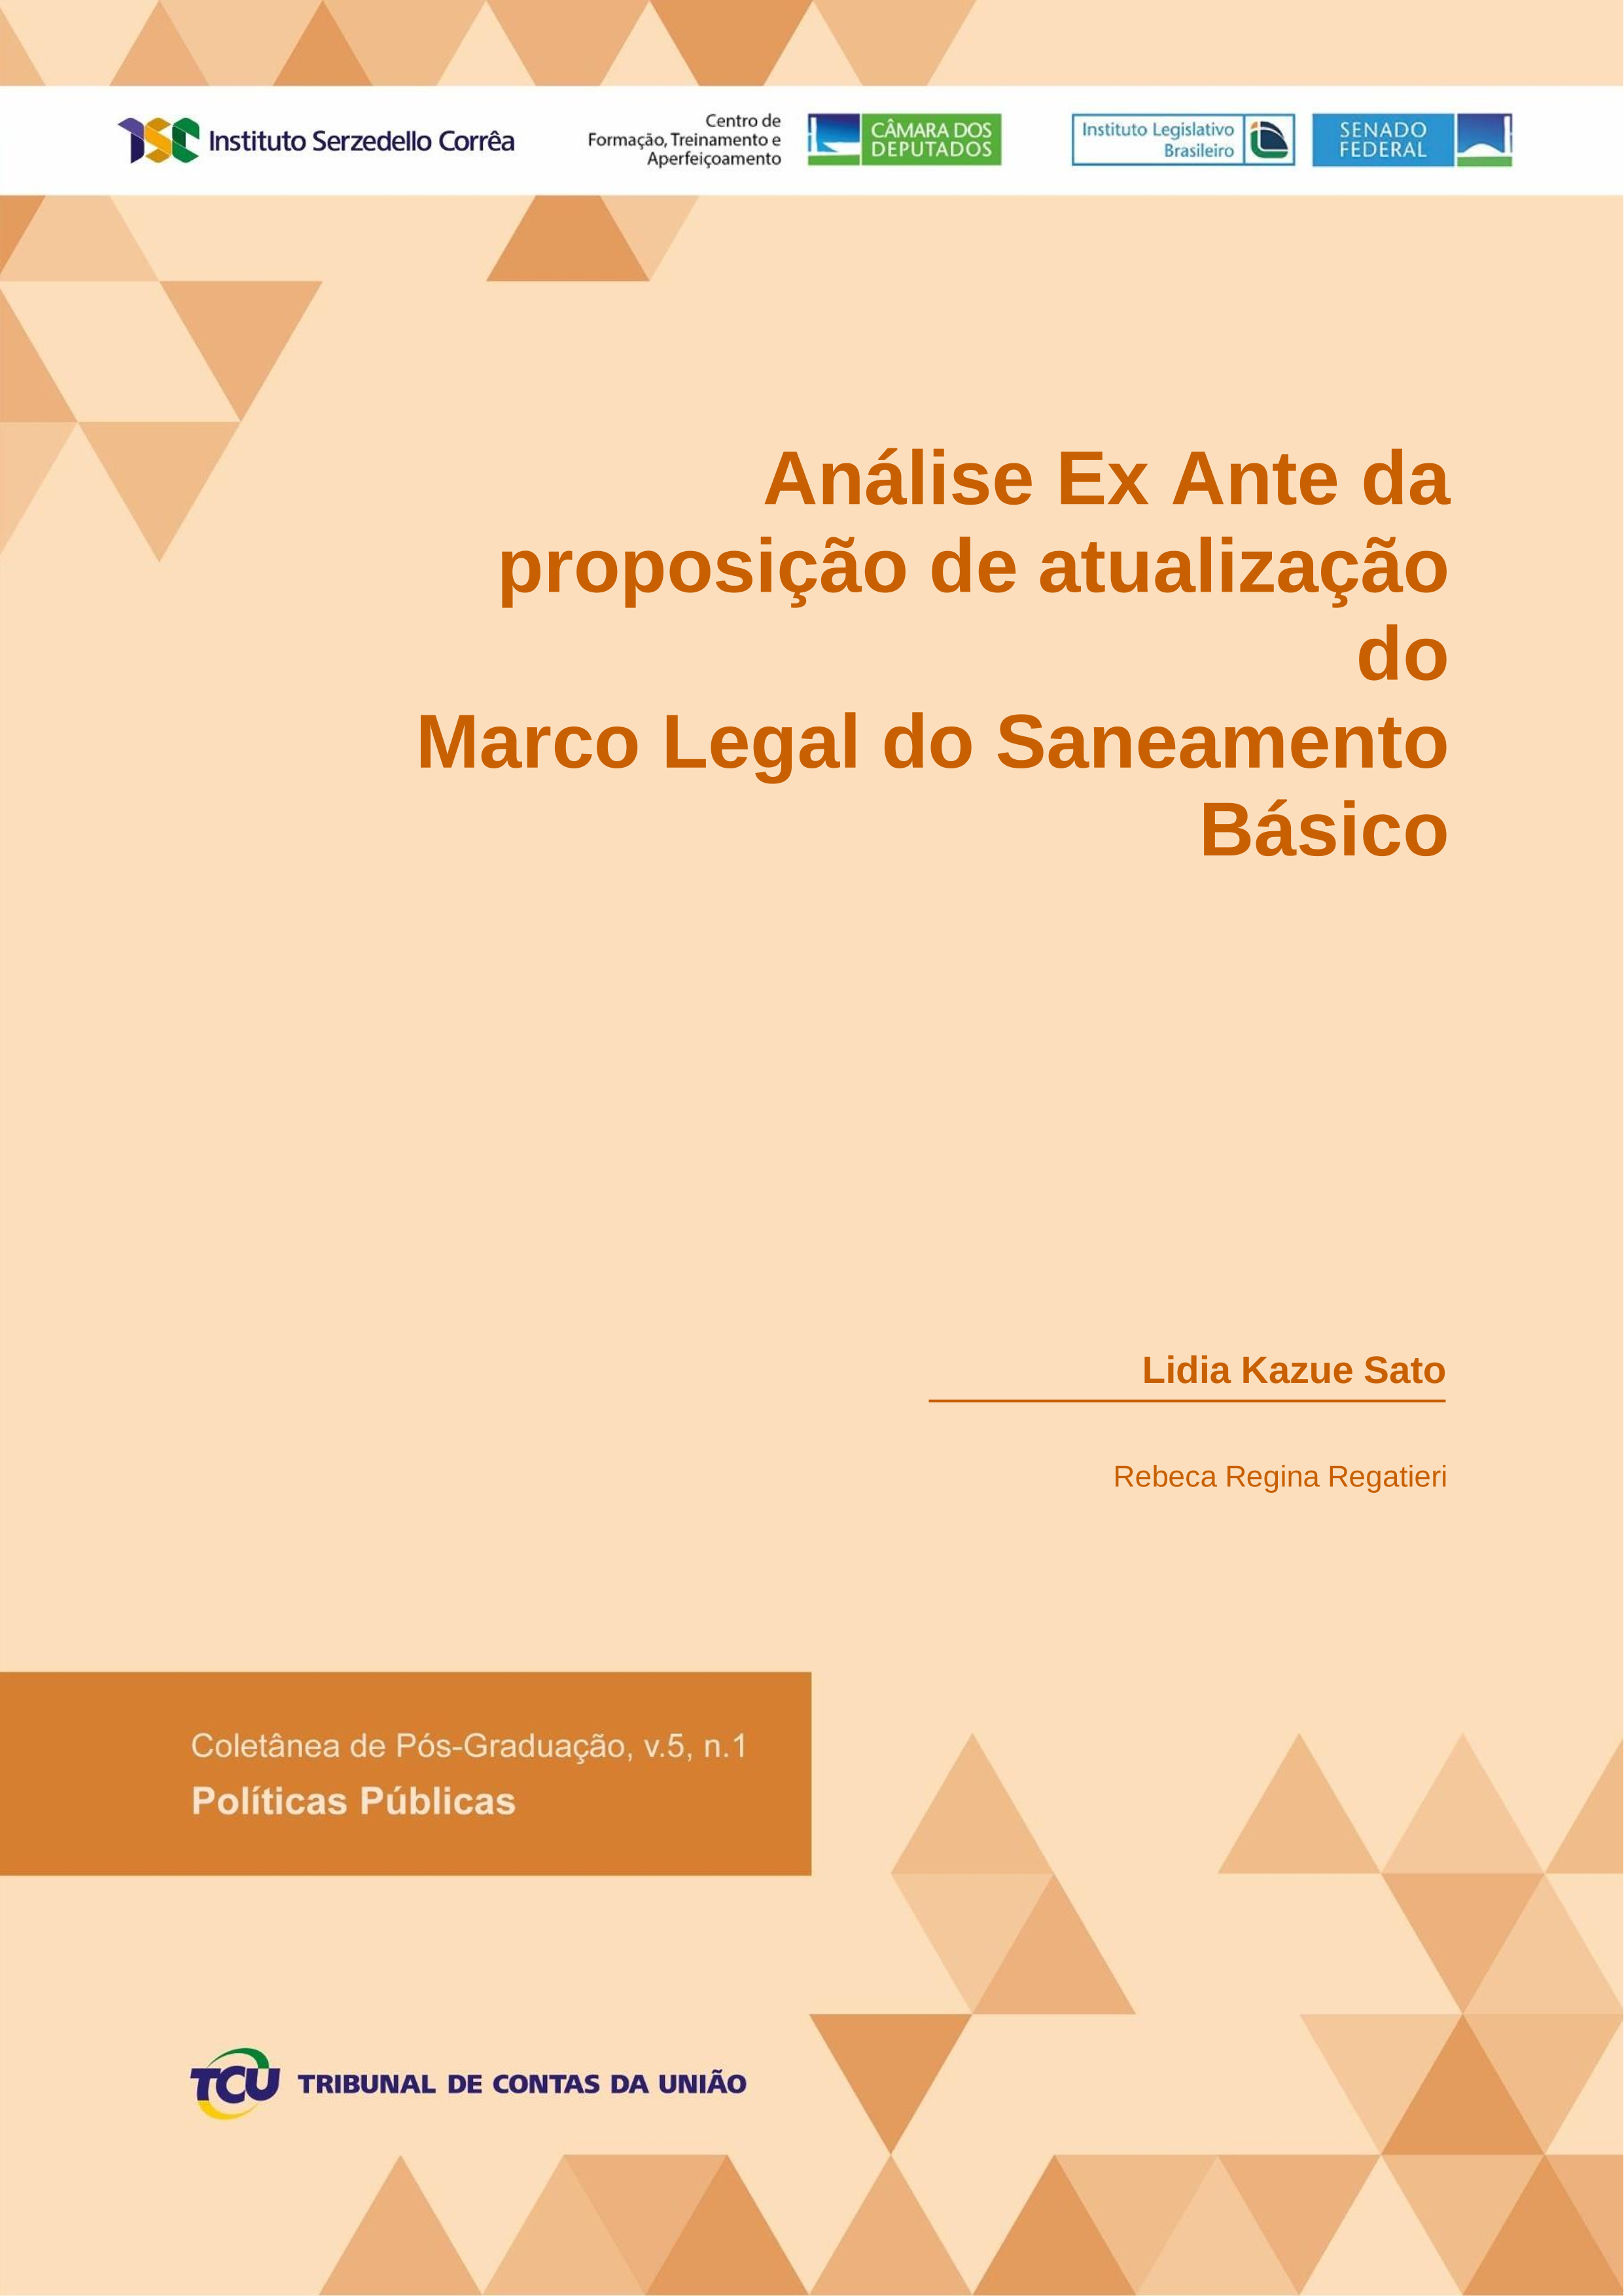 _sato_ l_ k. analise ex ante da proposicao de atualizacao do marco legal do saneamento basico.png